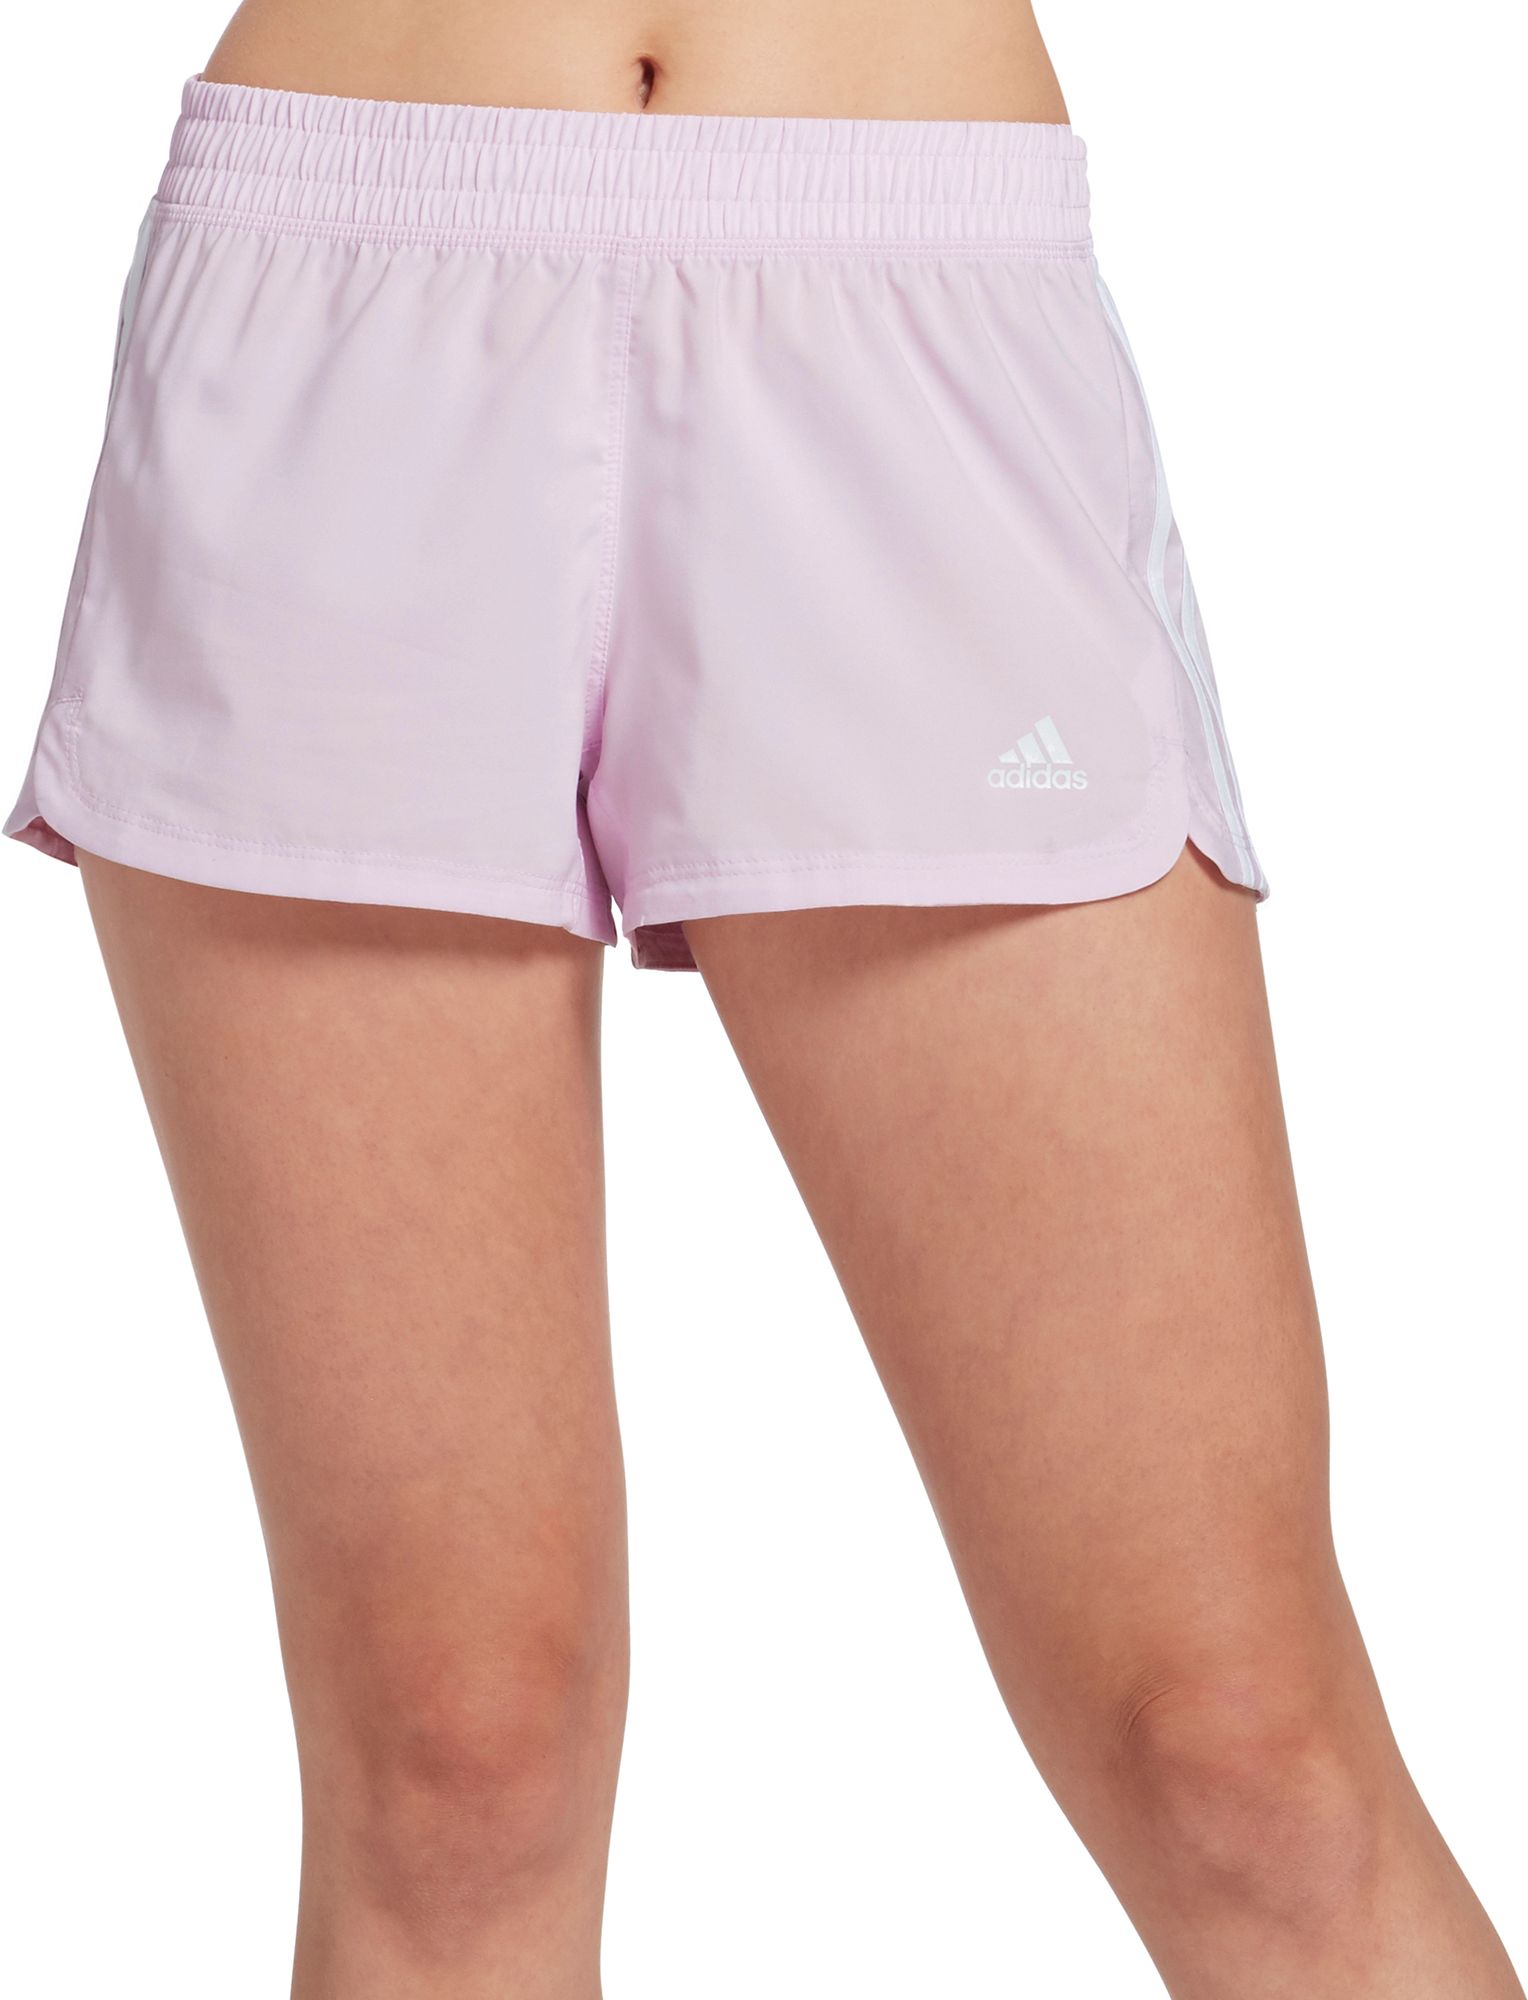 womens pink adidas shorts